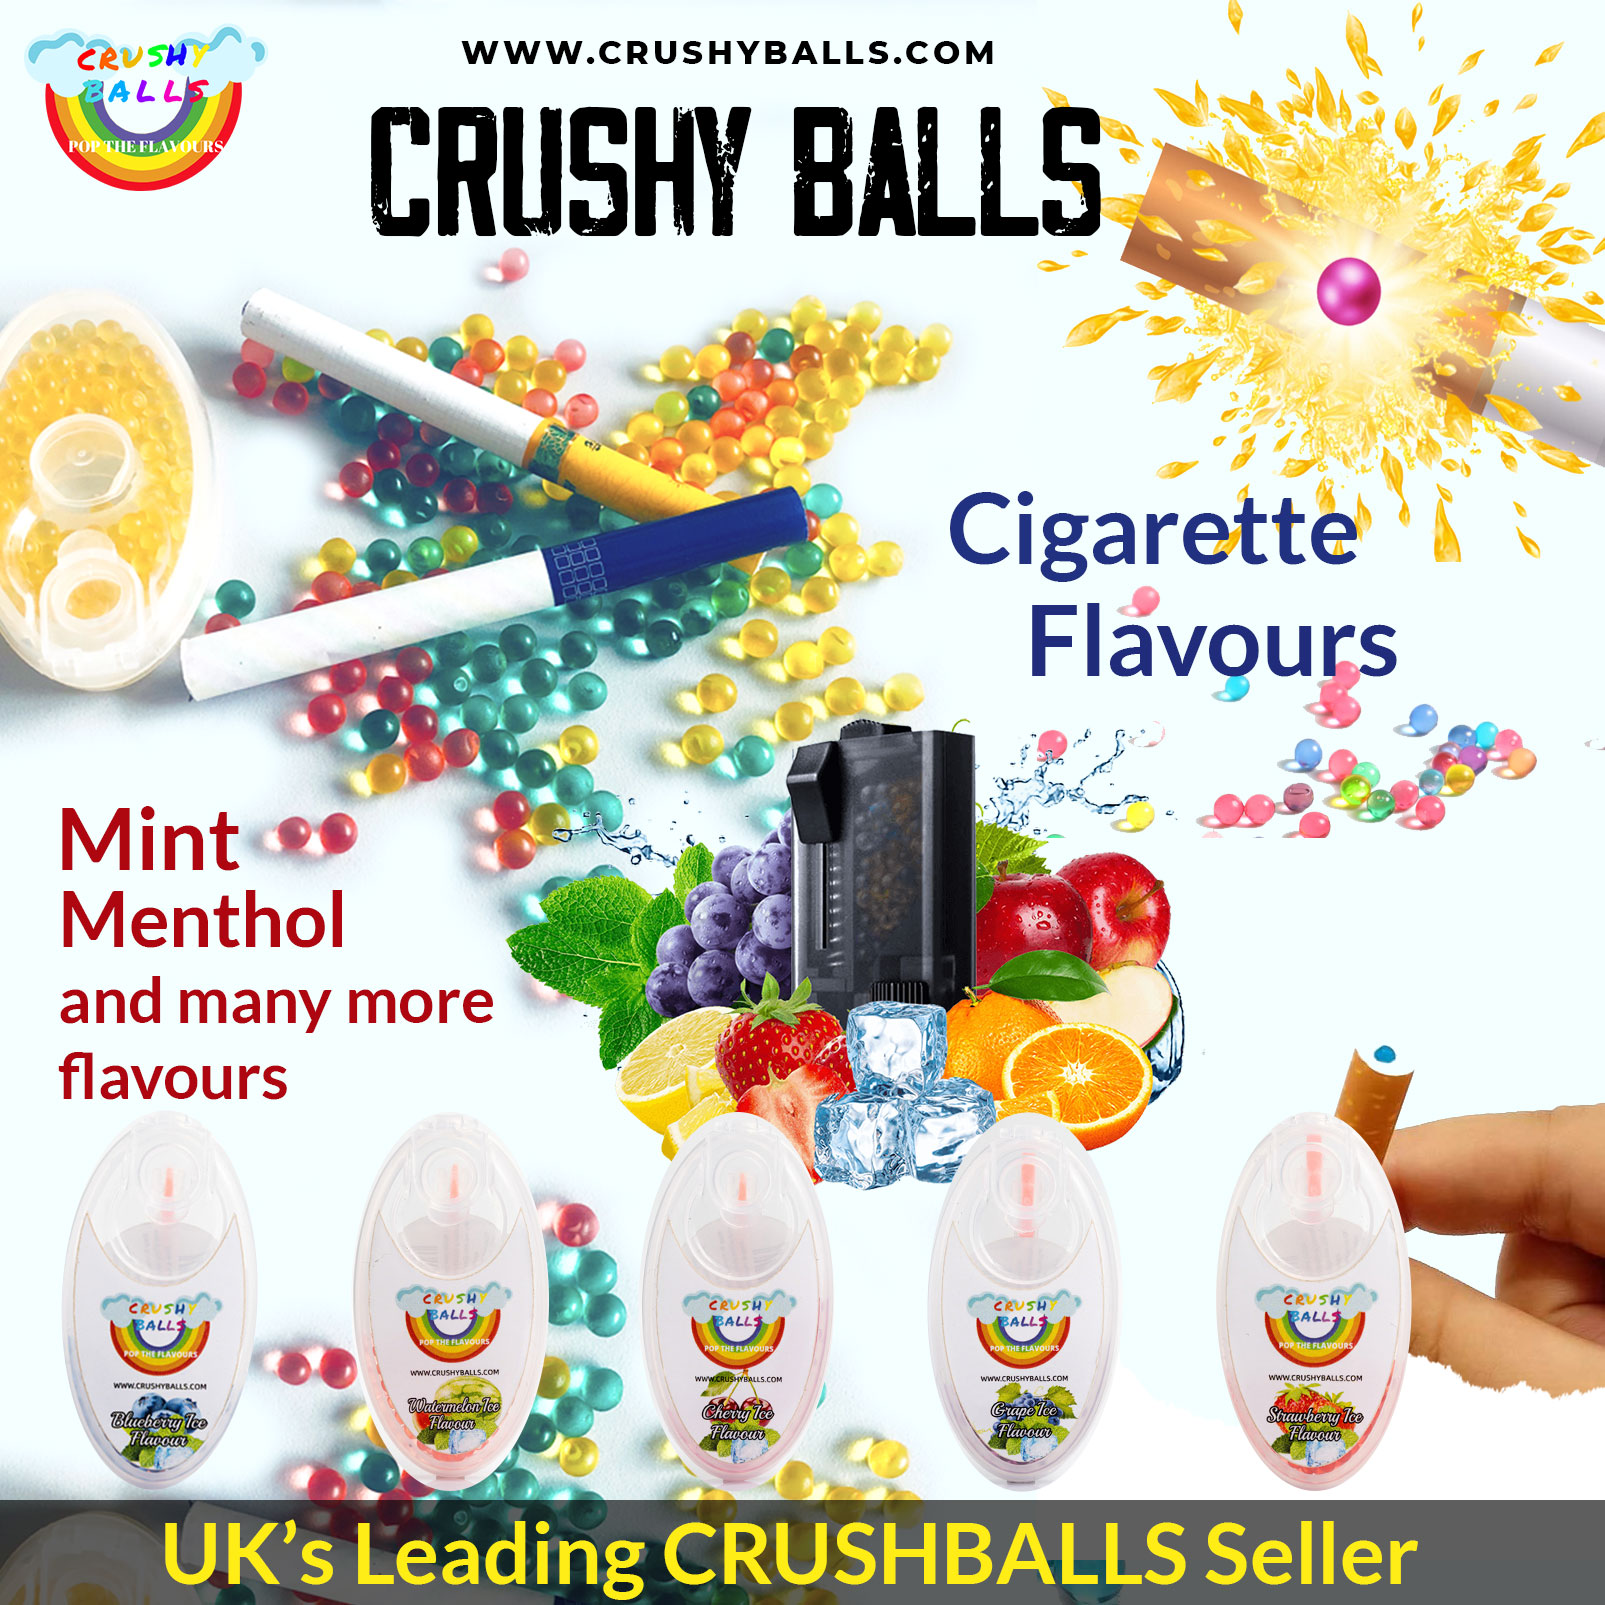 Crushyballs